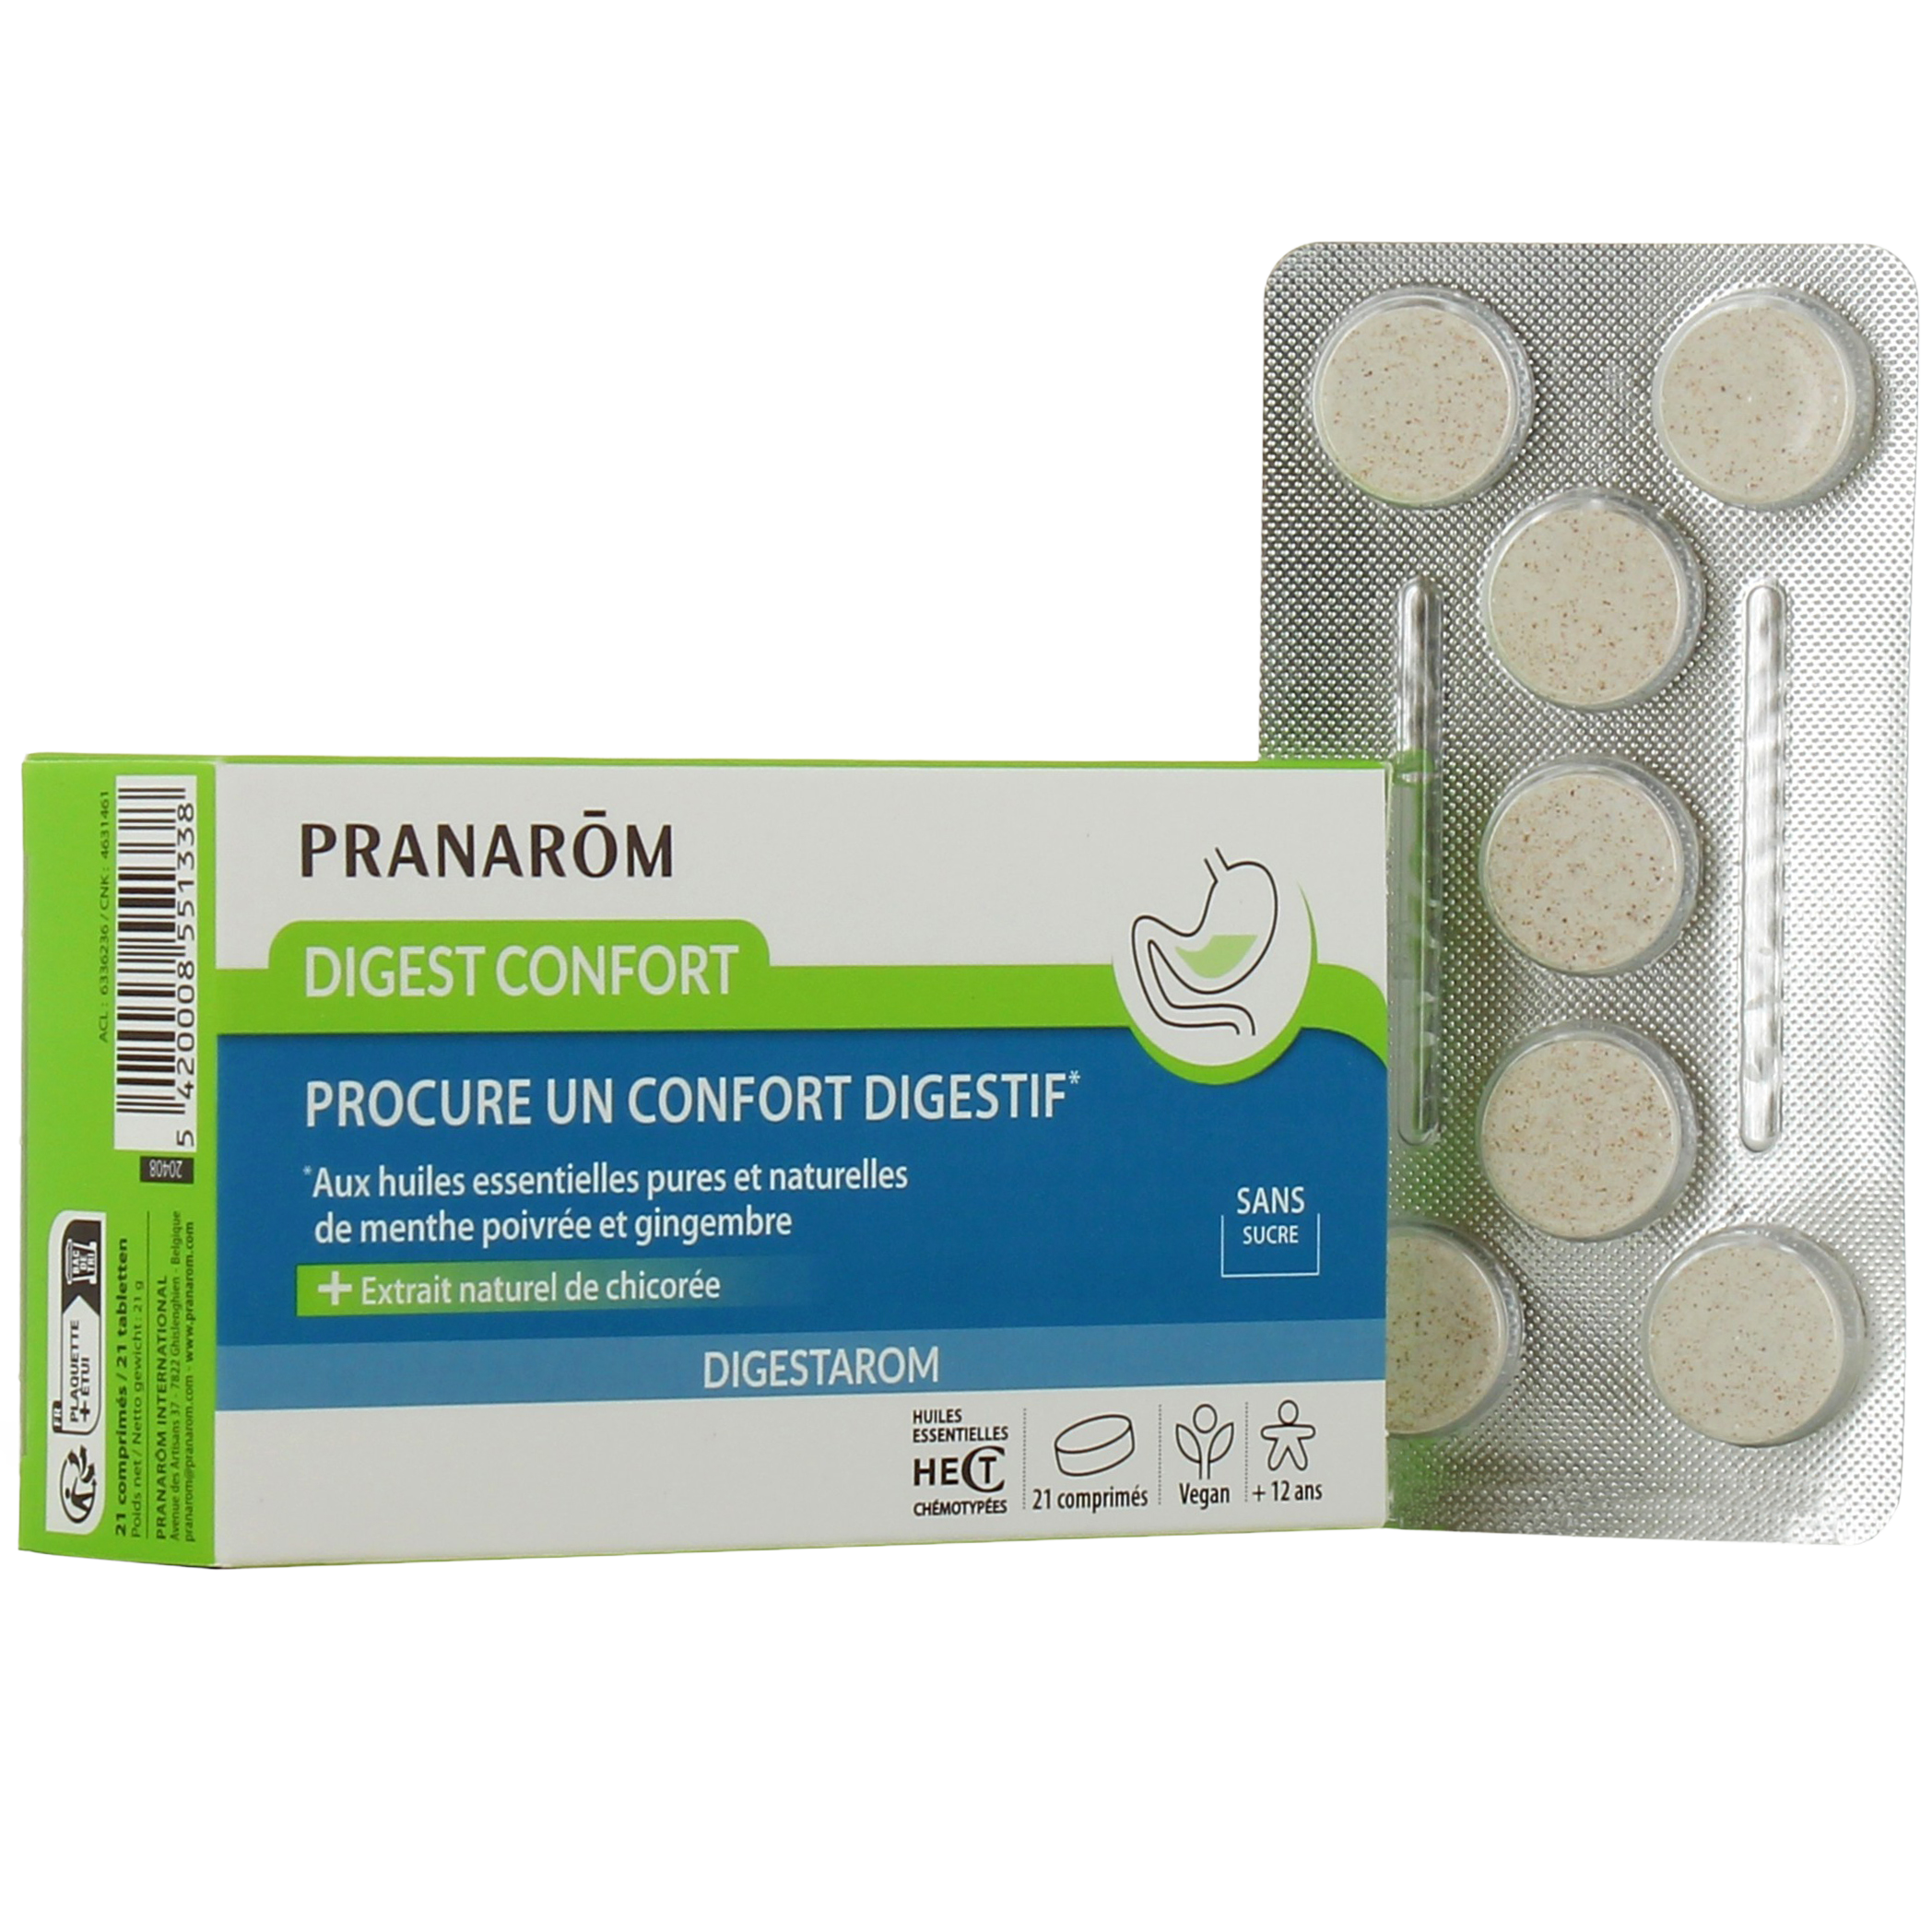 https://cdn.pharmaciedesdrakkars.com/media/images/products/pranarom-digest-confort-pranarom4-1686129675.jpg